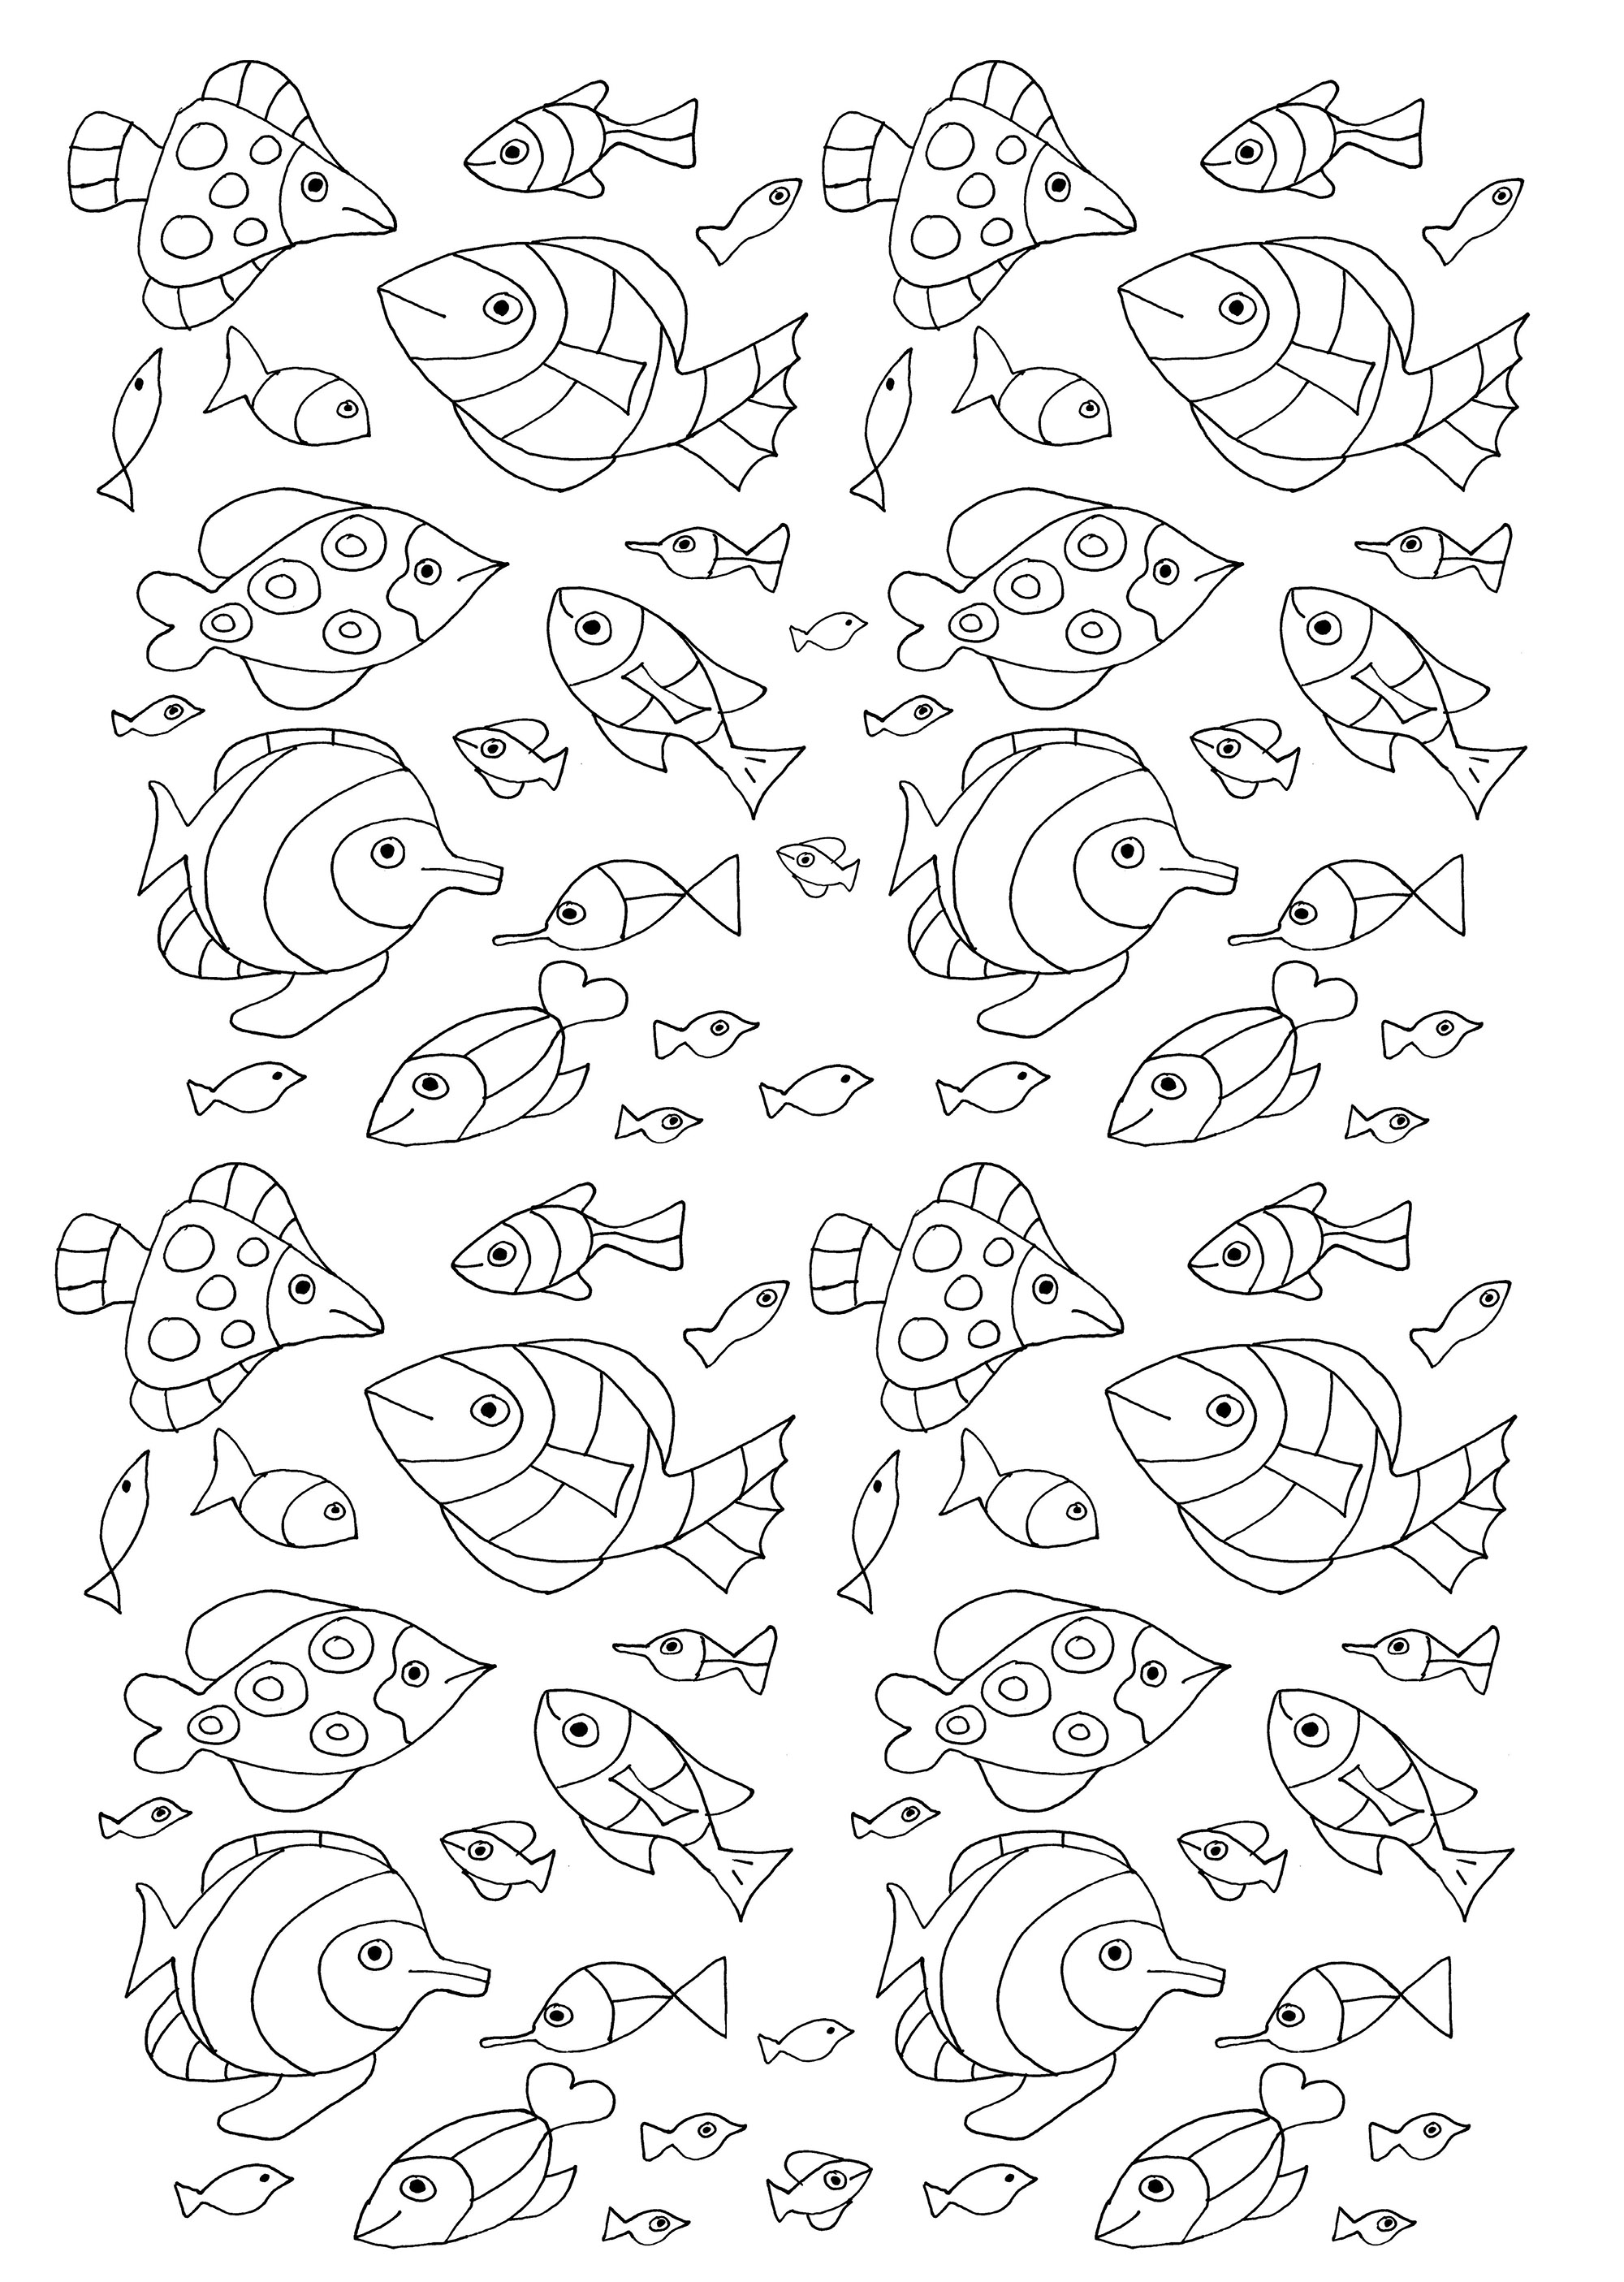 100 pececillos para colorear. Una variedad de peces con diseños sencillos que puedes colorear.